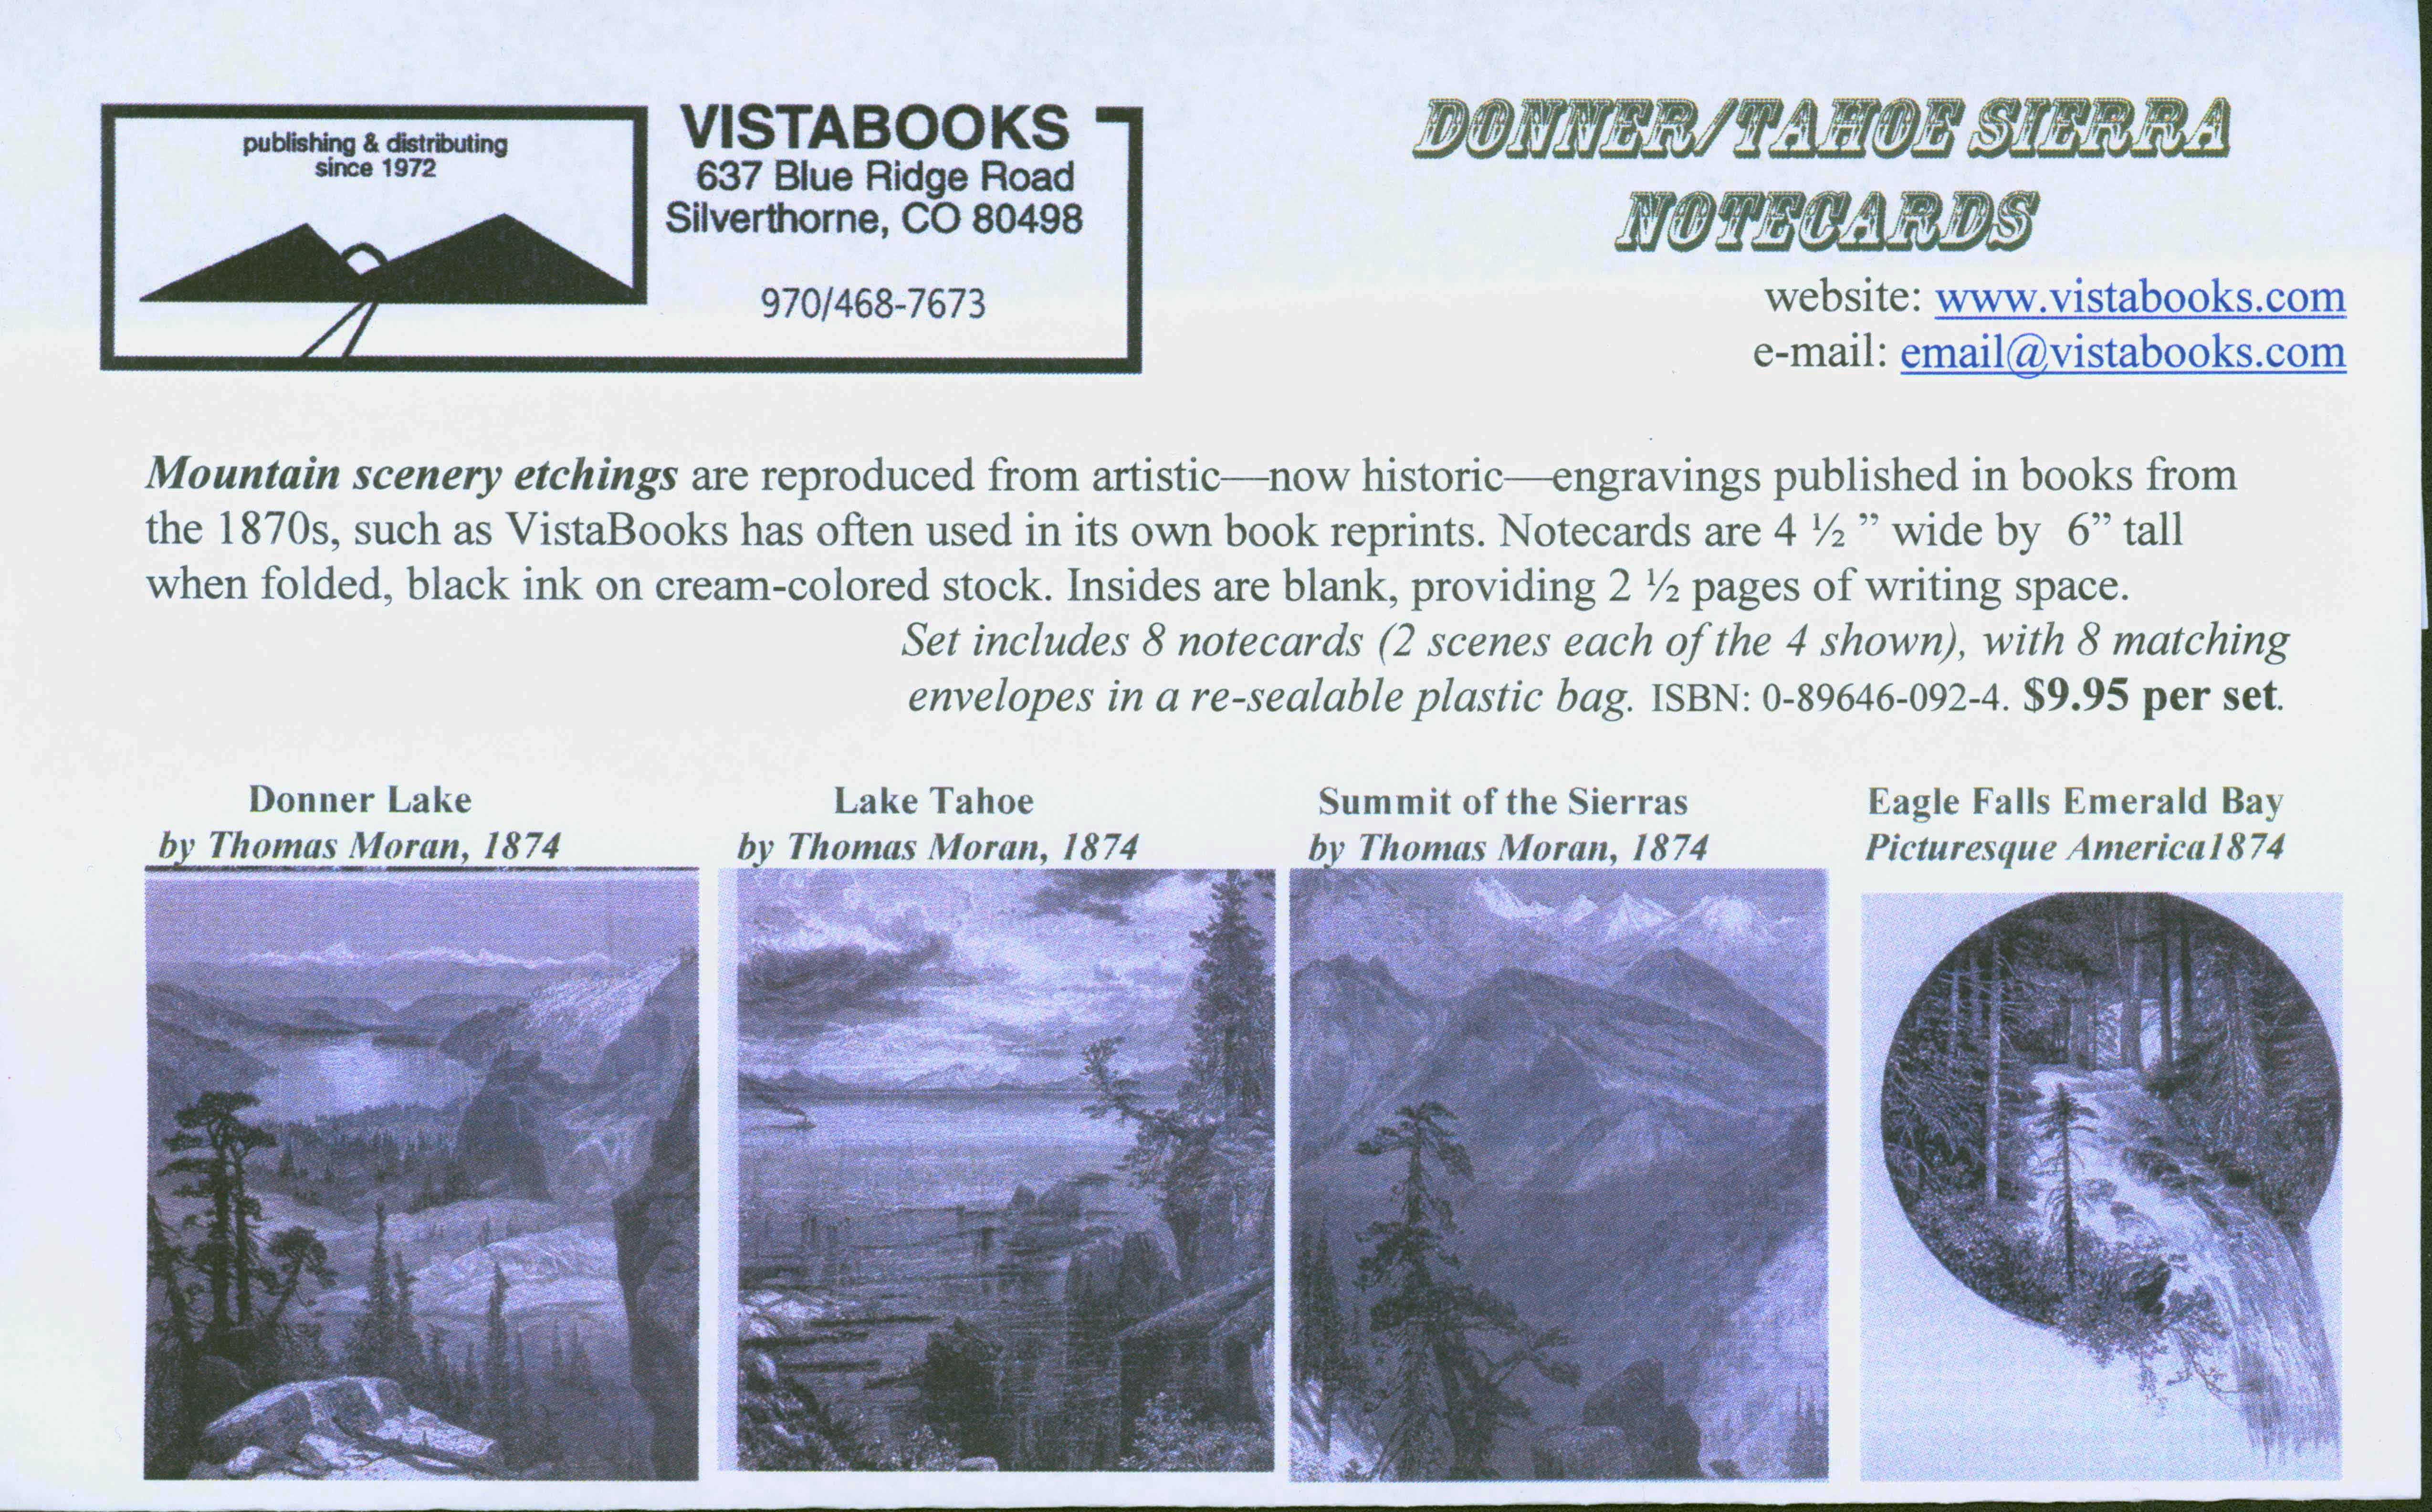 Donner/Tahoe Sierra notecards